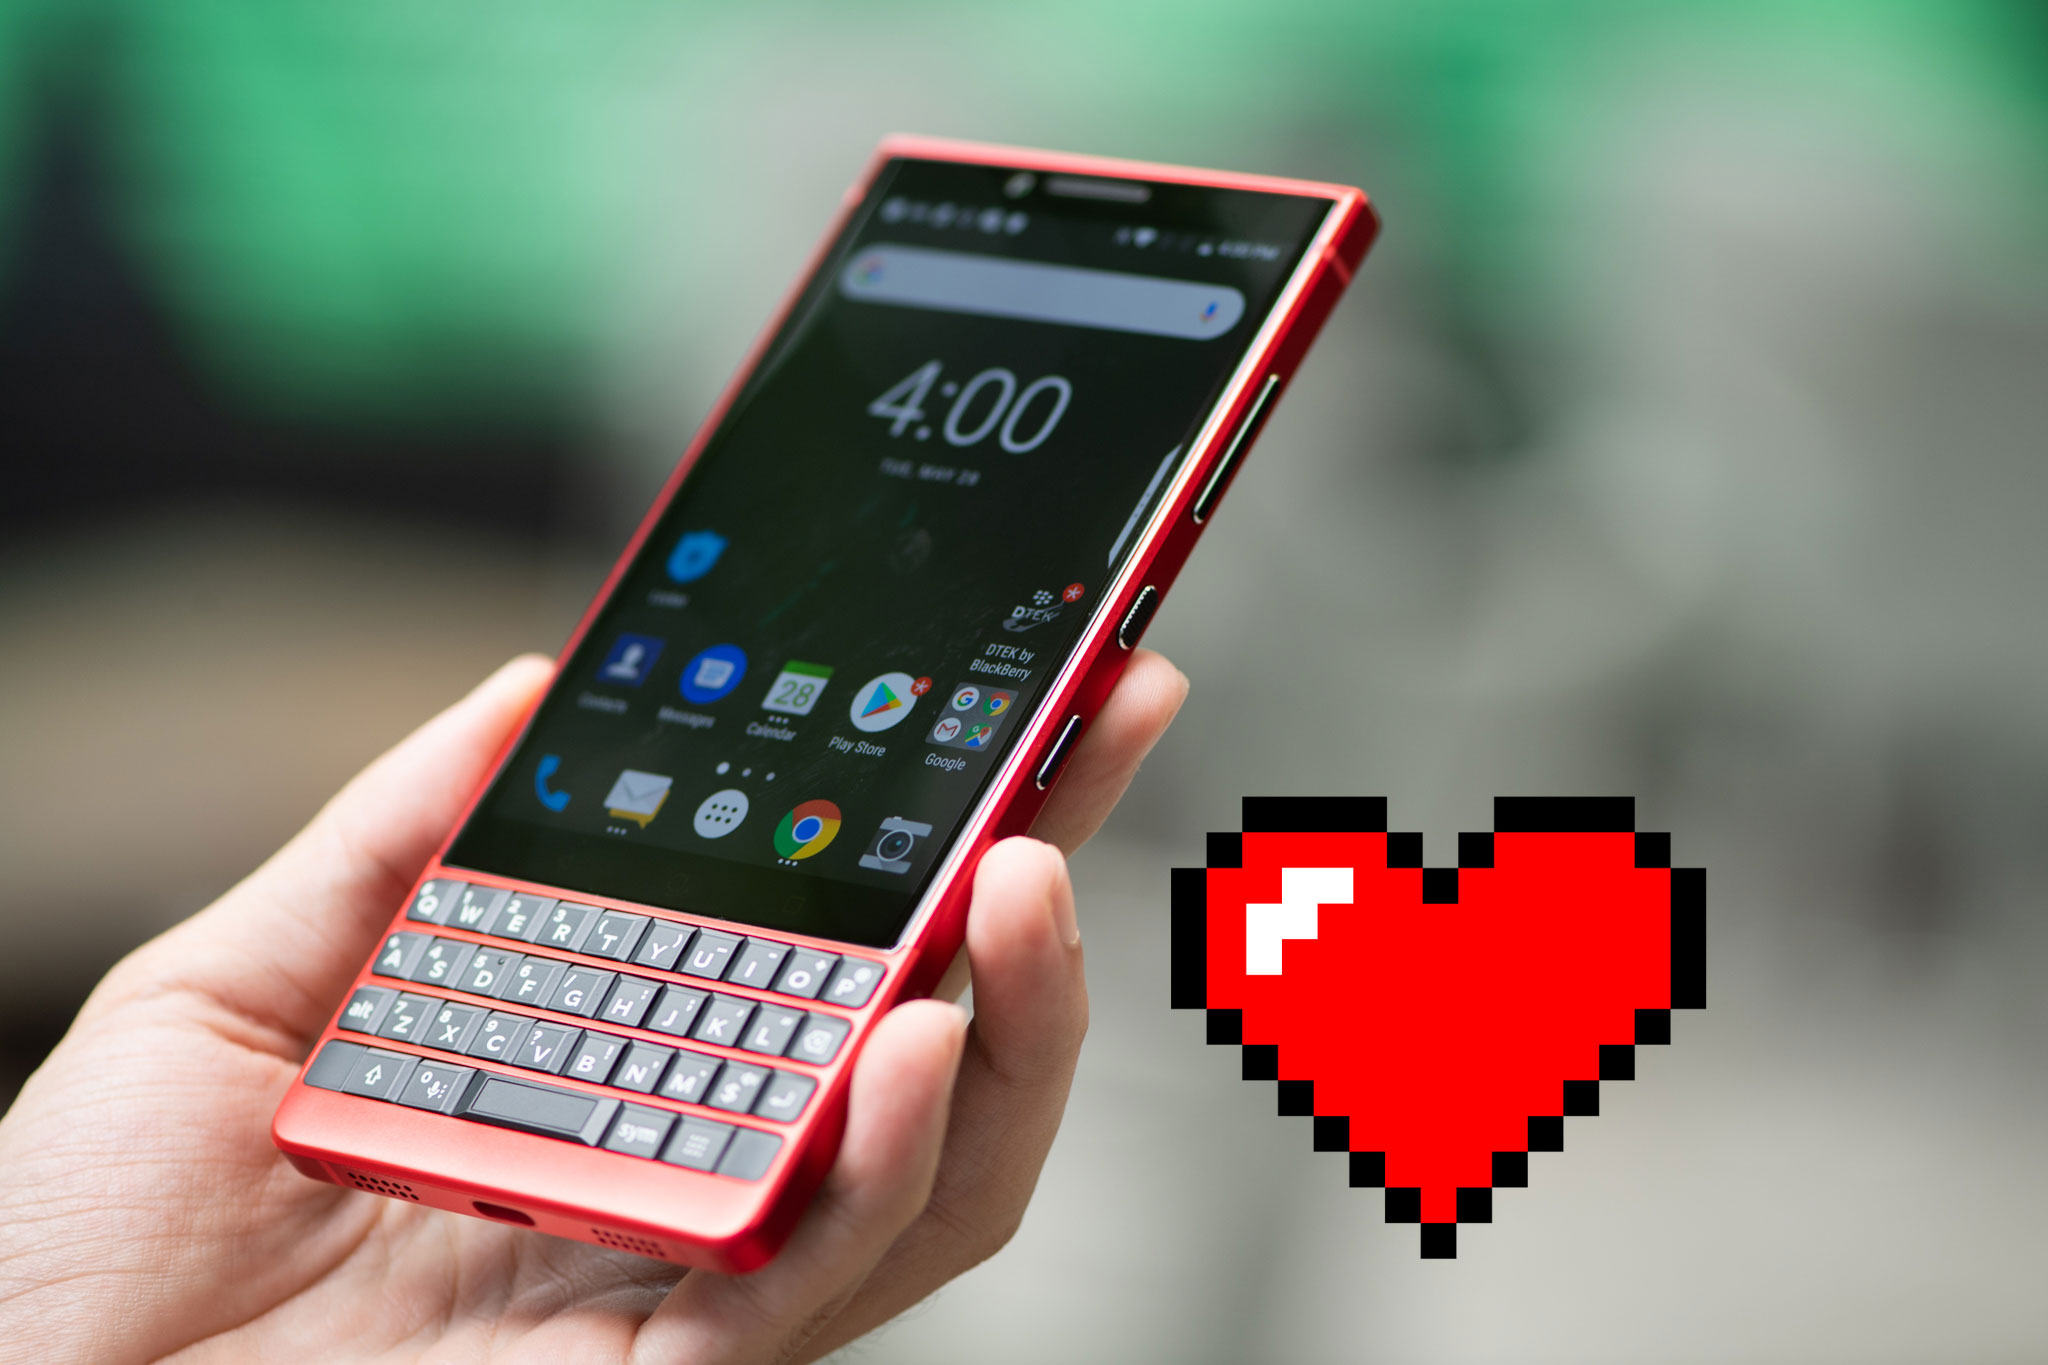 Trên tay Blackberry Key2 Red Edition: đỏ và đẹp, giá 18 triệu